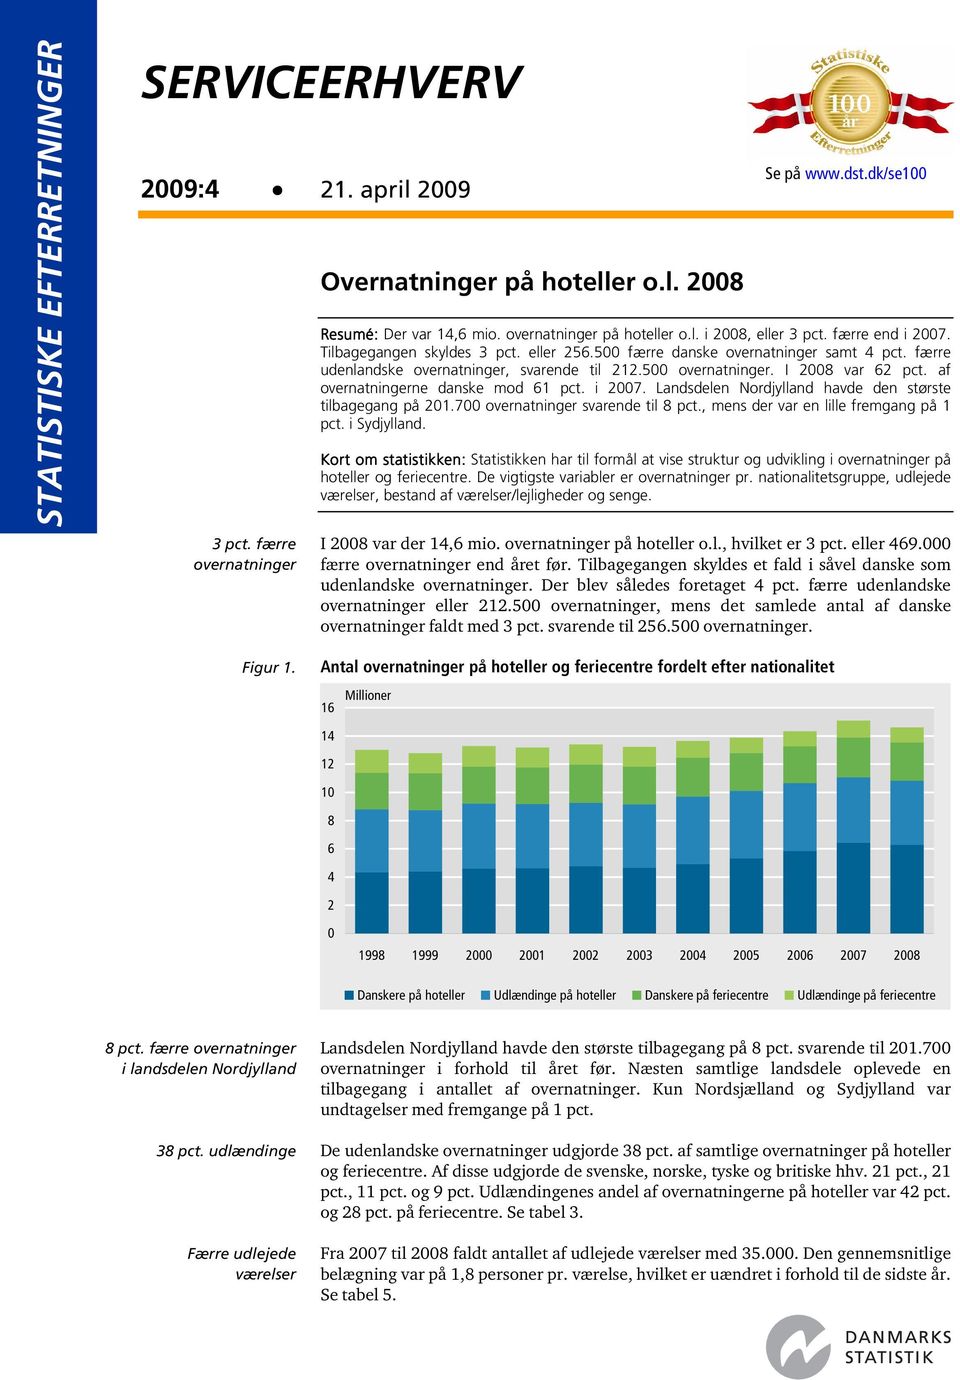 færre udenlandske overnatninger, svarende til 212.500 overnatninger. I 2008 var 62 pct. af overnatningerne danske mod 61 pct. i 2007. Landsdelen Nordjylland havde den største tilbagegang på 201.